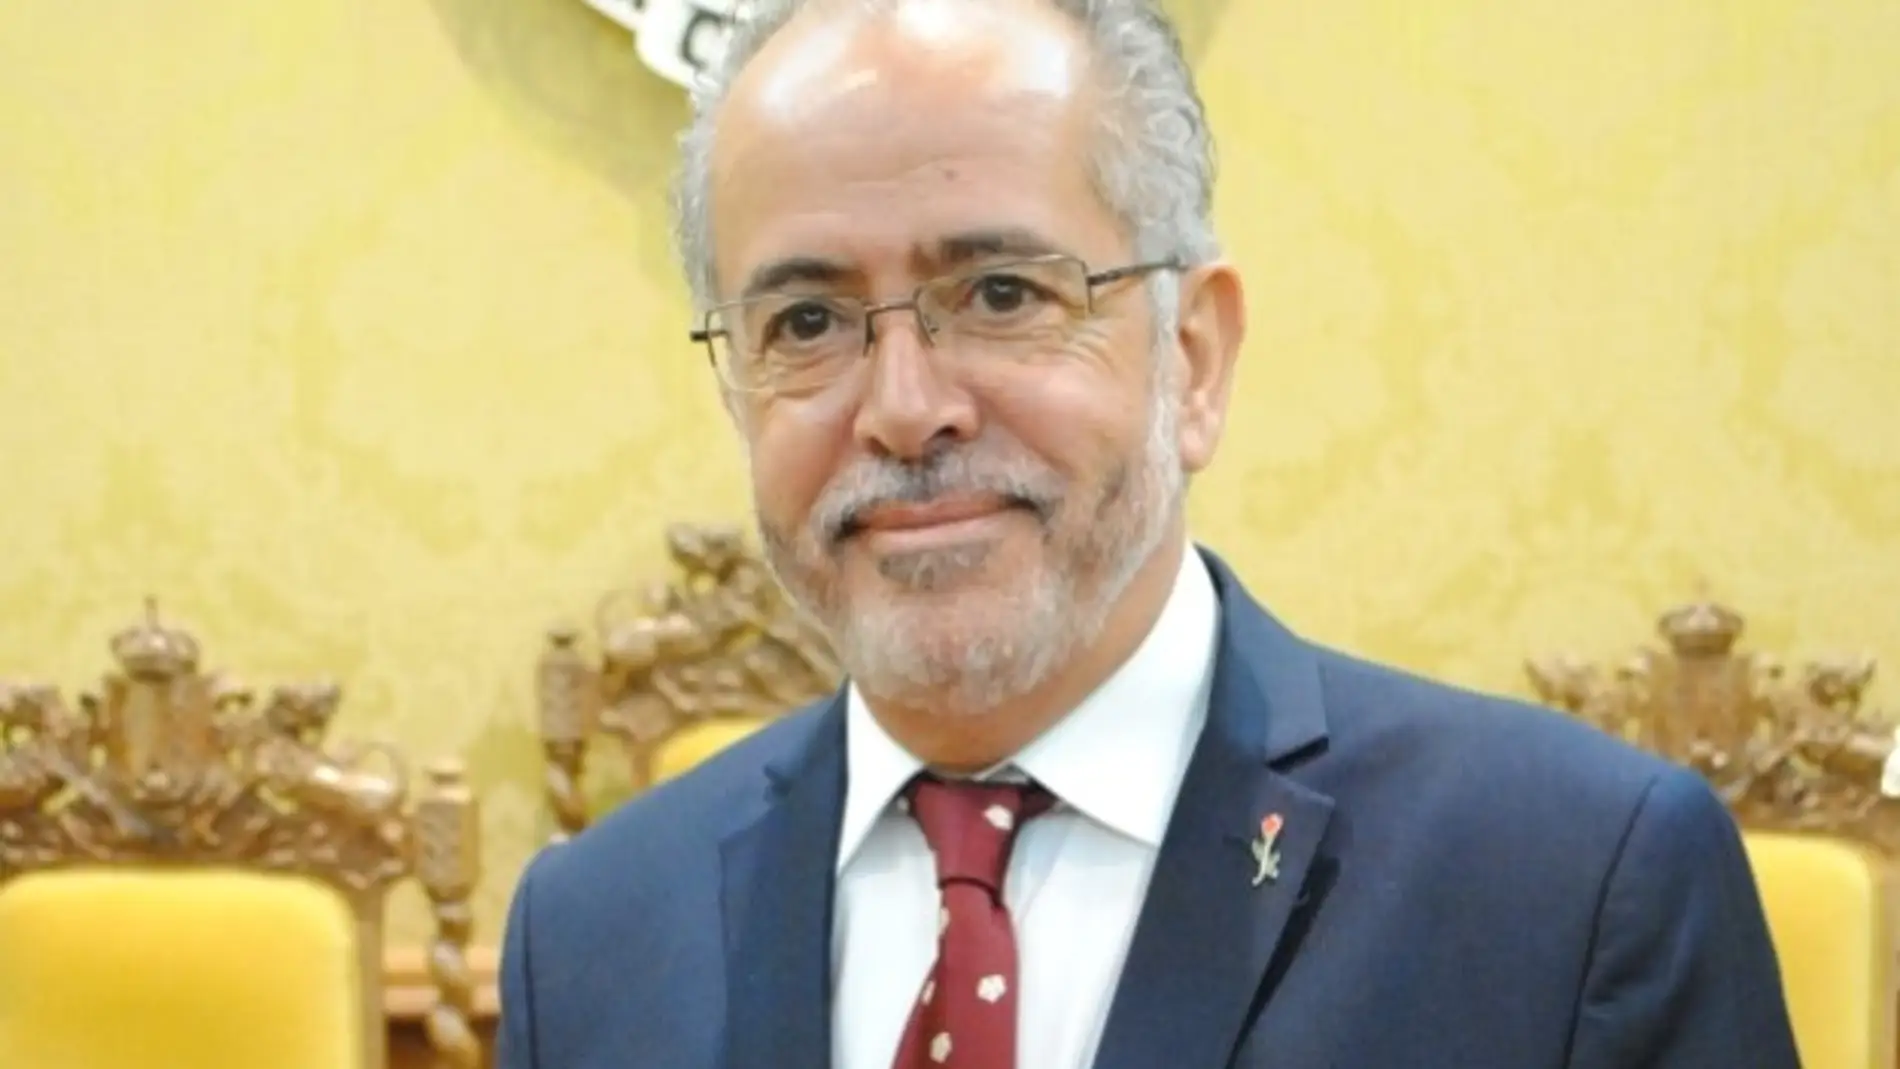 José Antonio Sánchez Elola